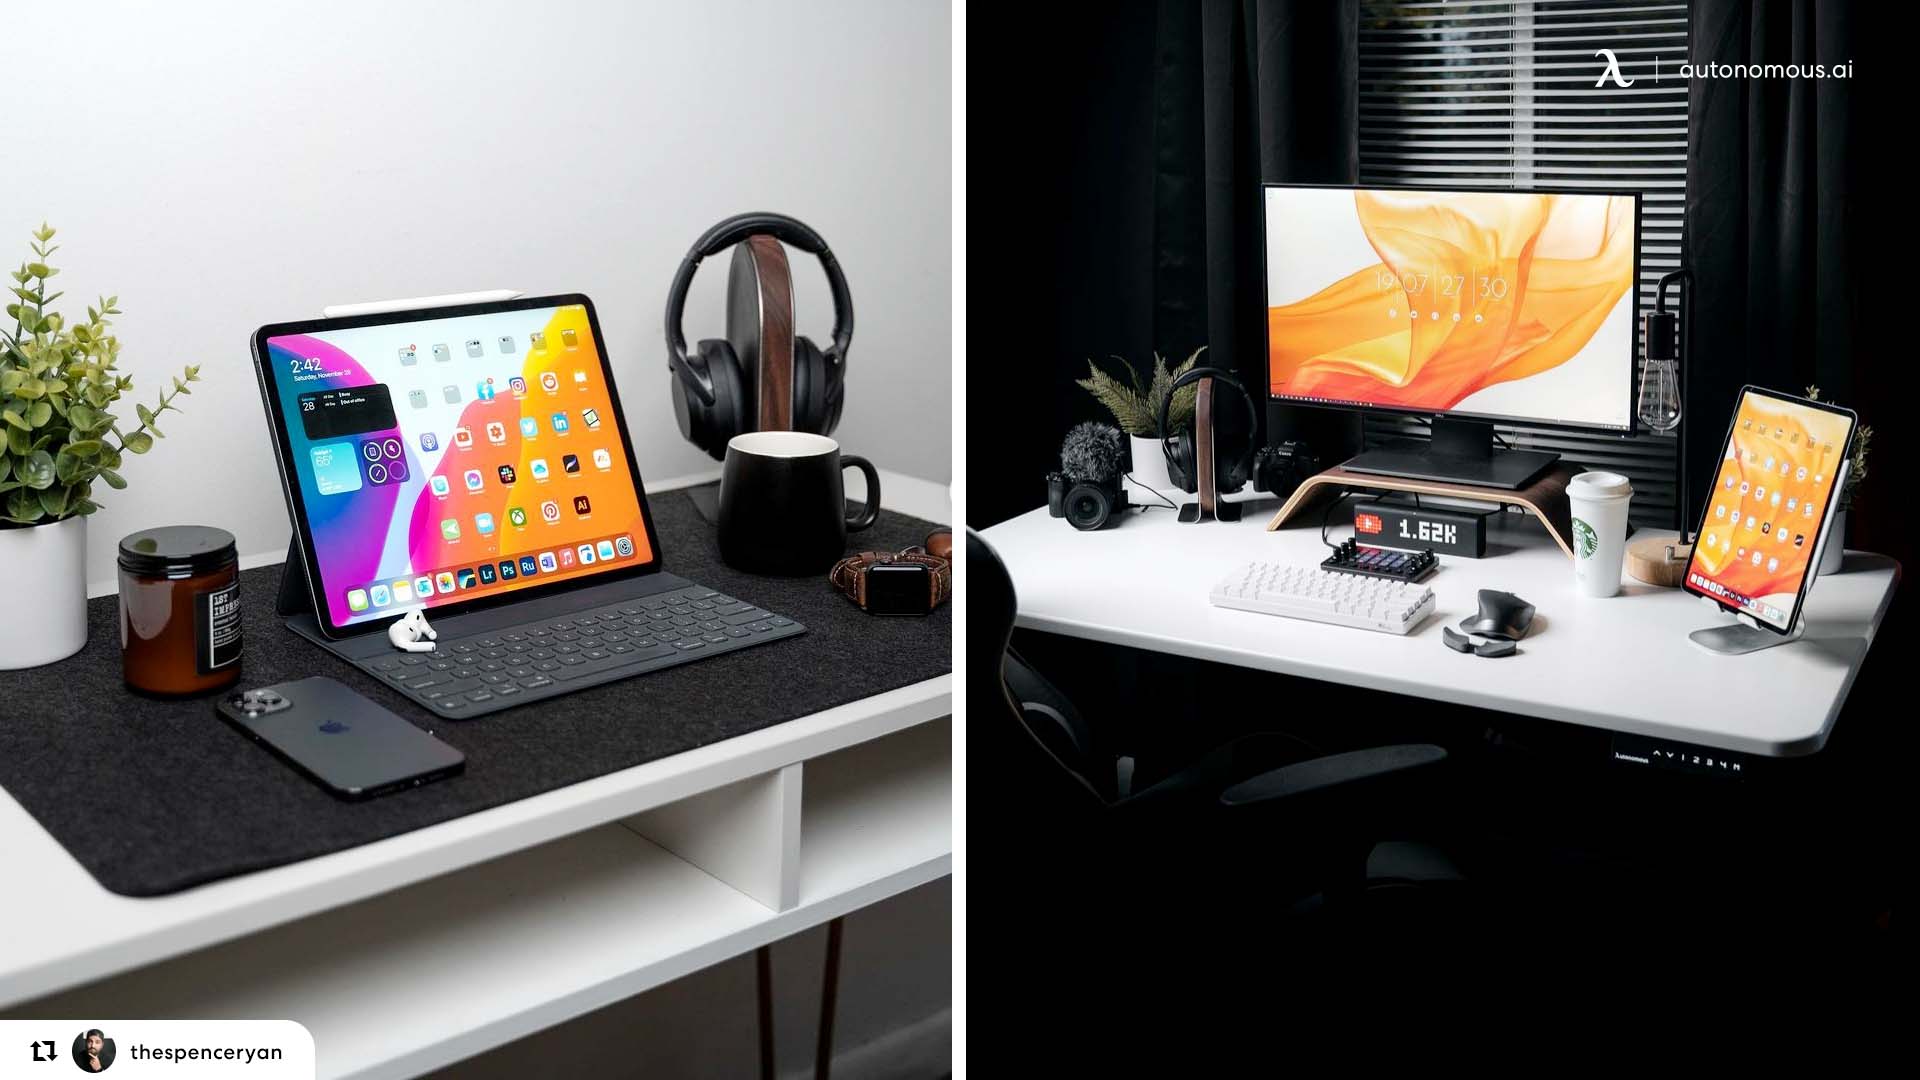 DIY Adjustable Desk for under $25